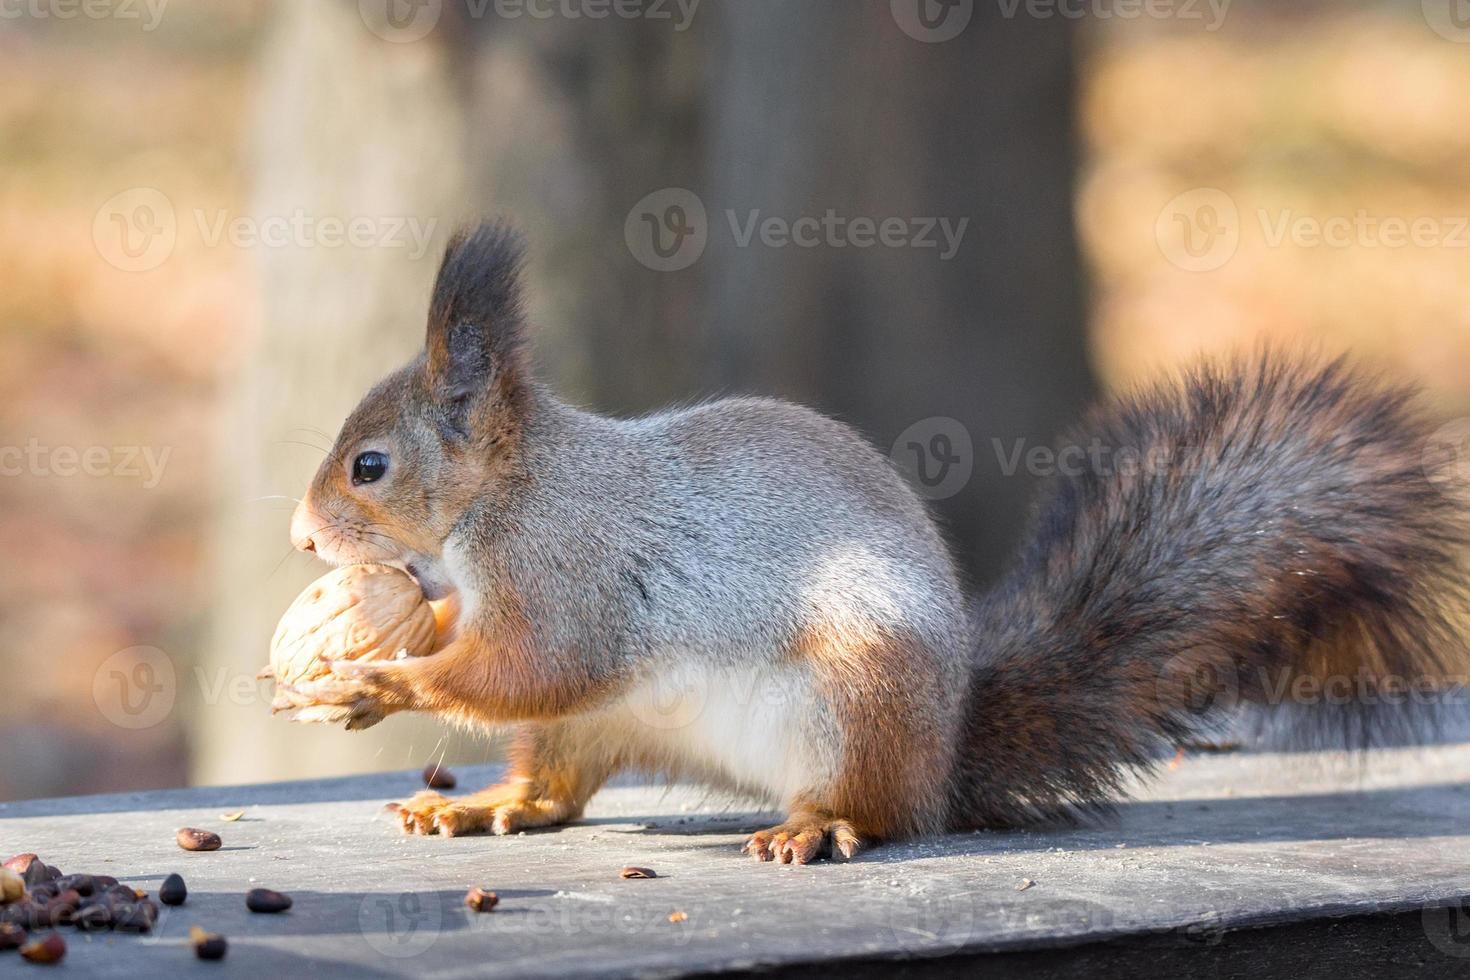 esquilo vermelho em um galho no outono foto